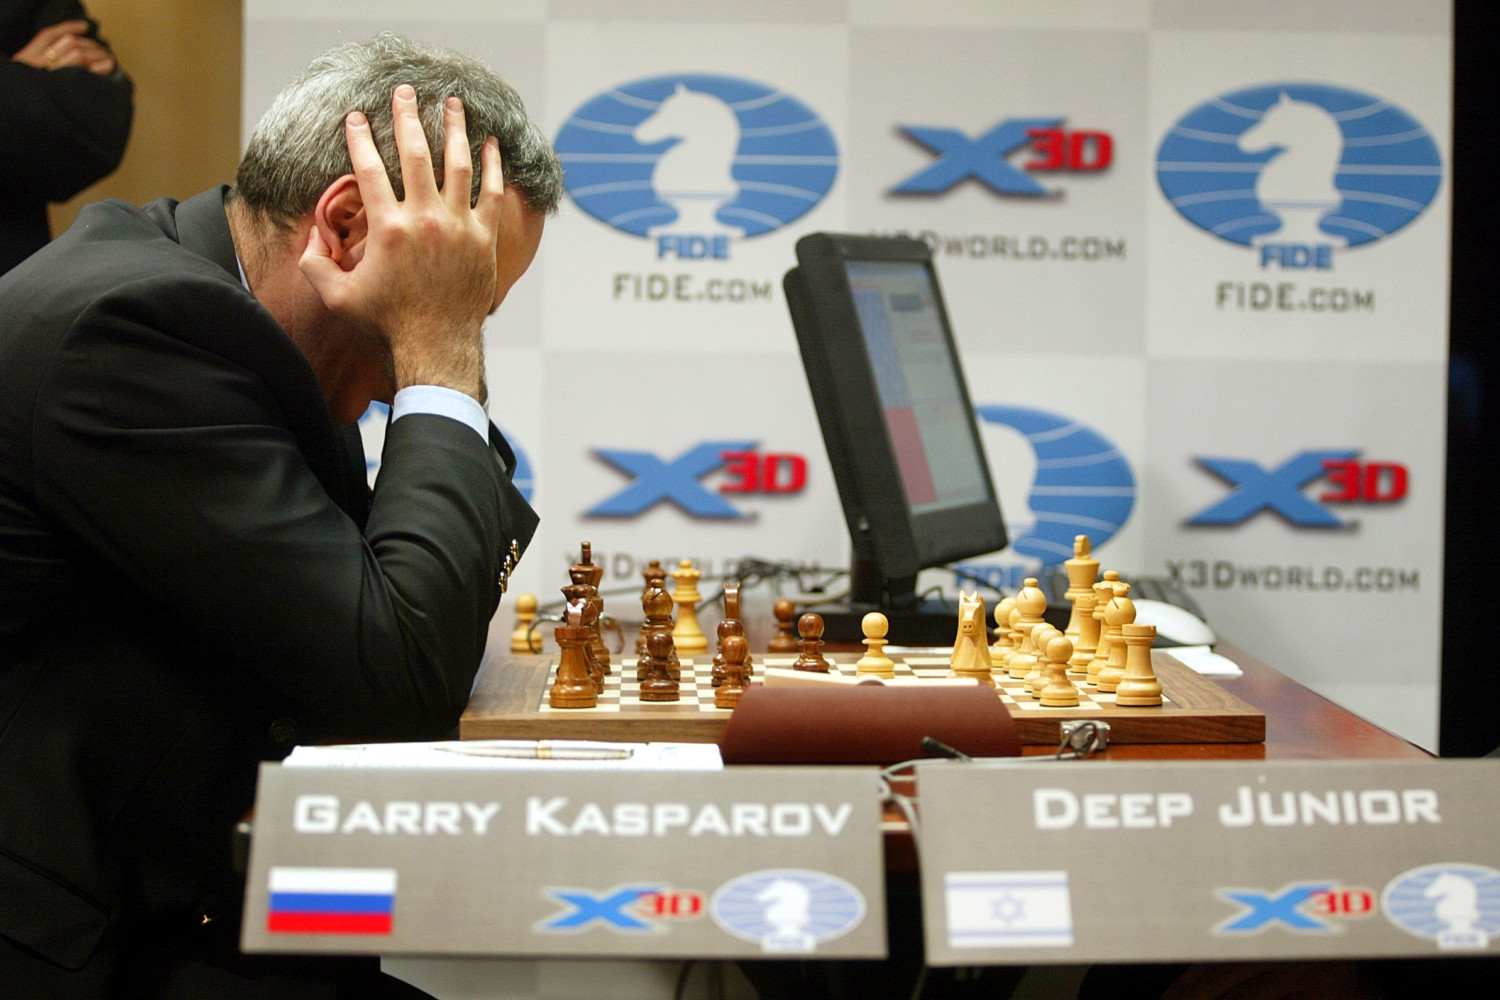 Kasparov Versus Deep Junior